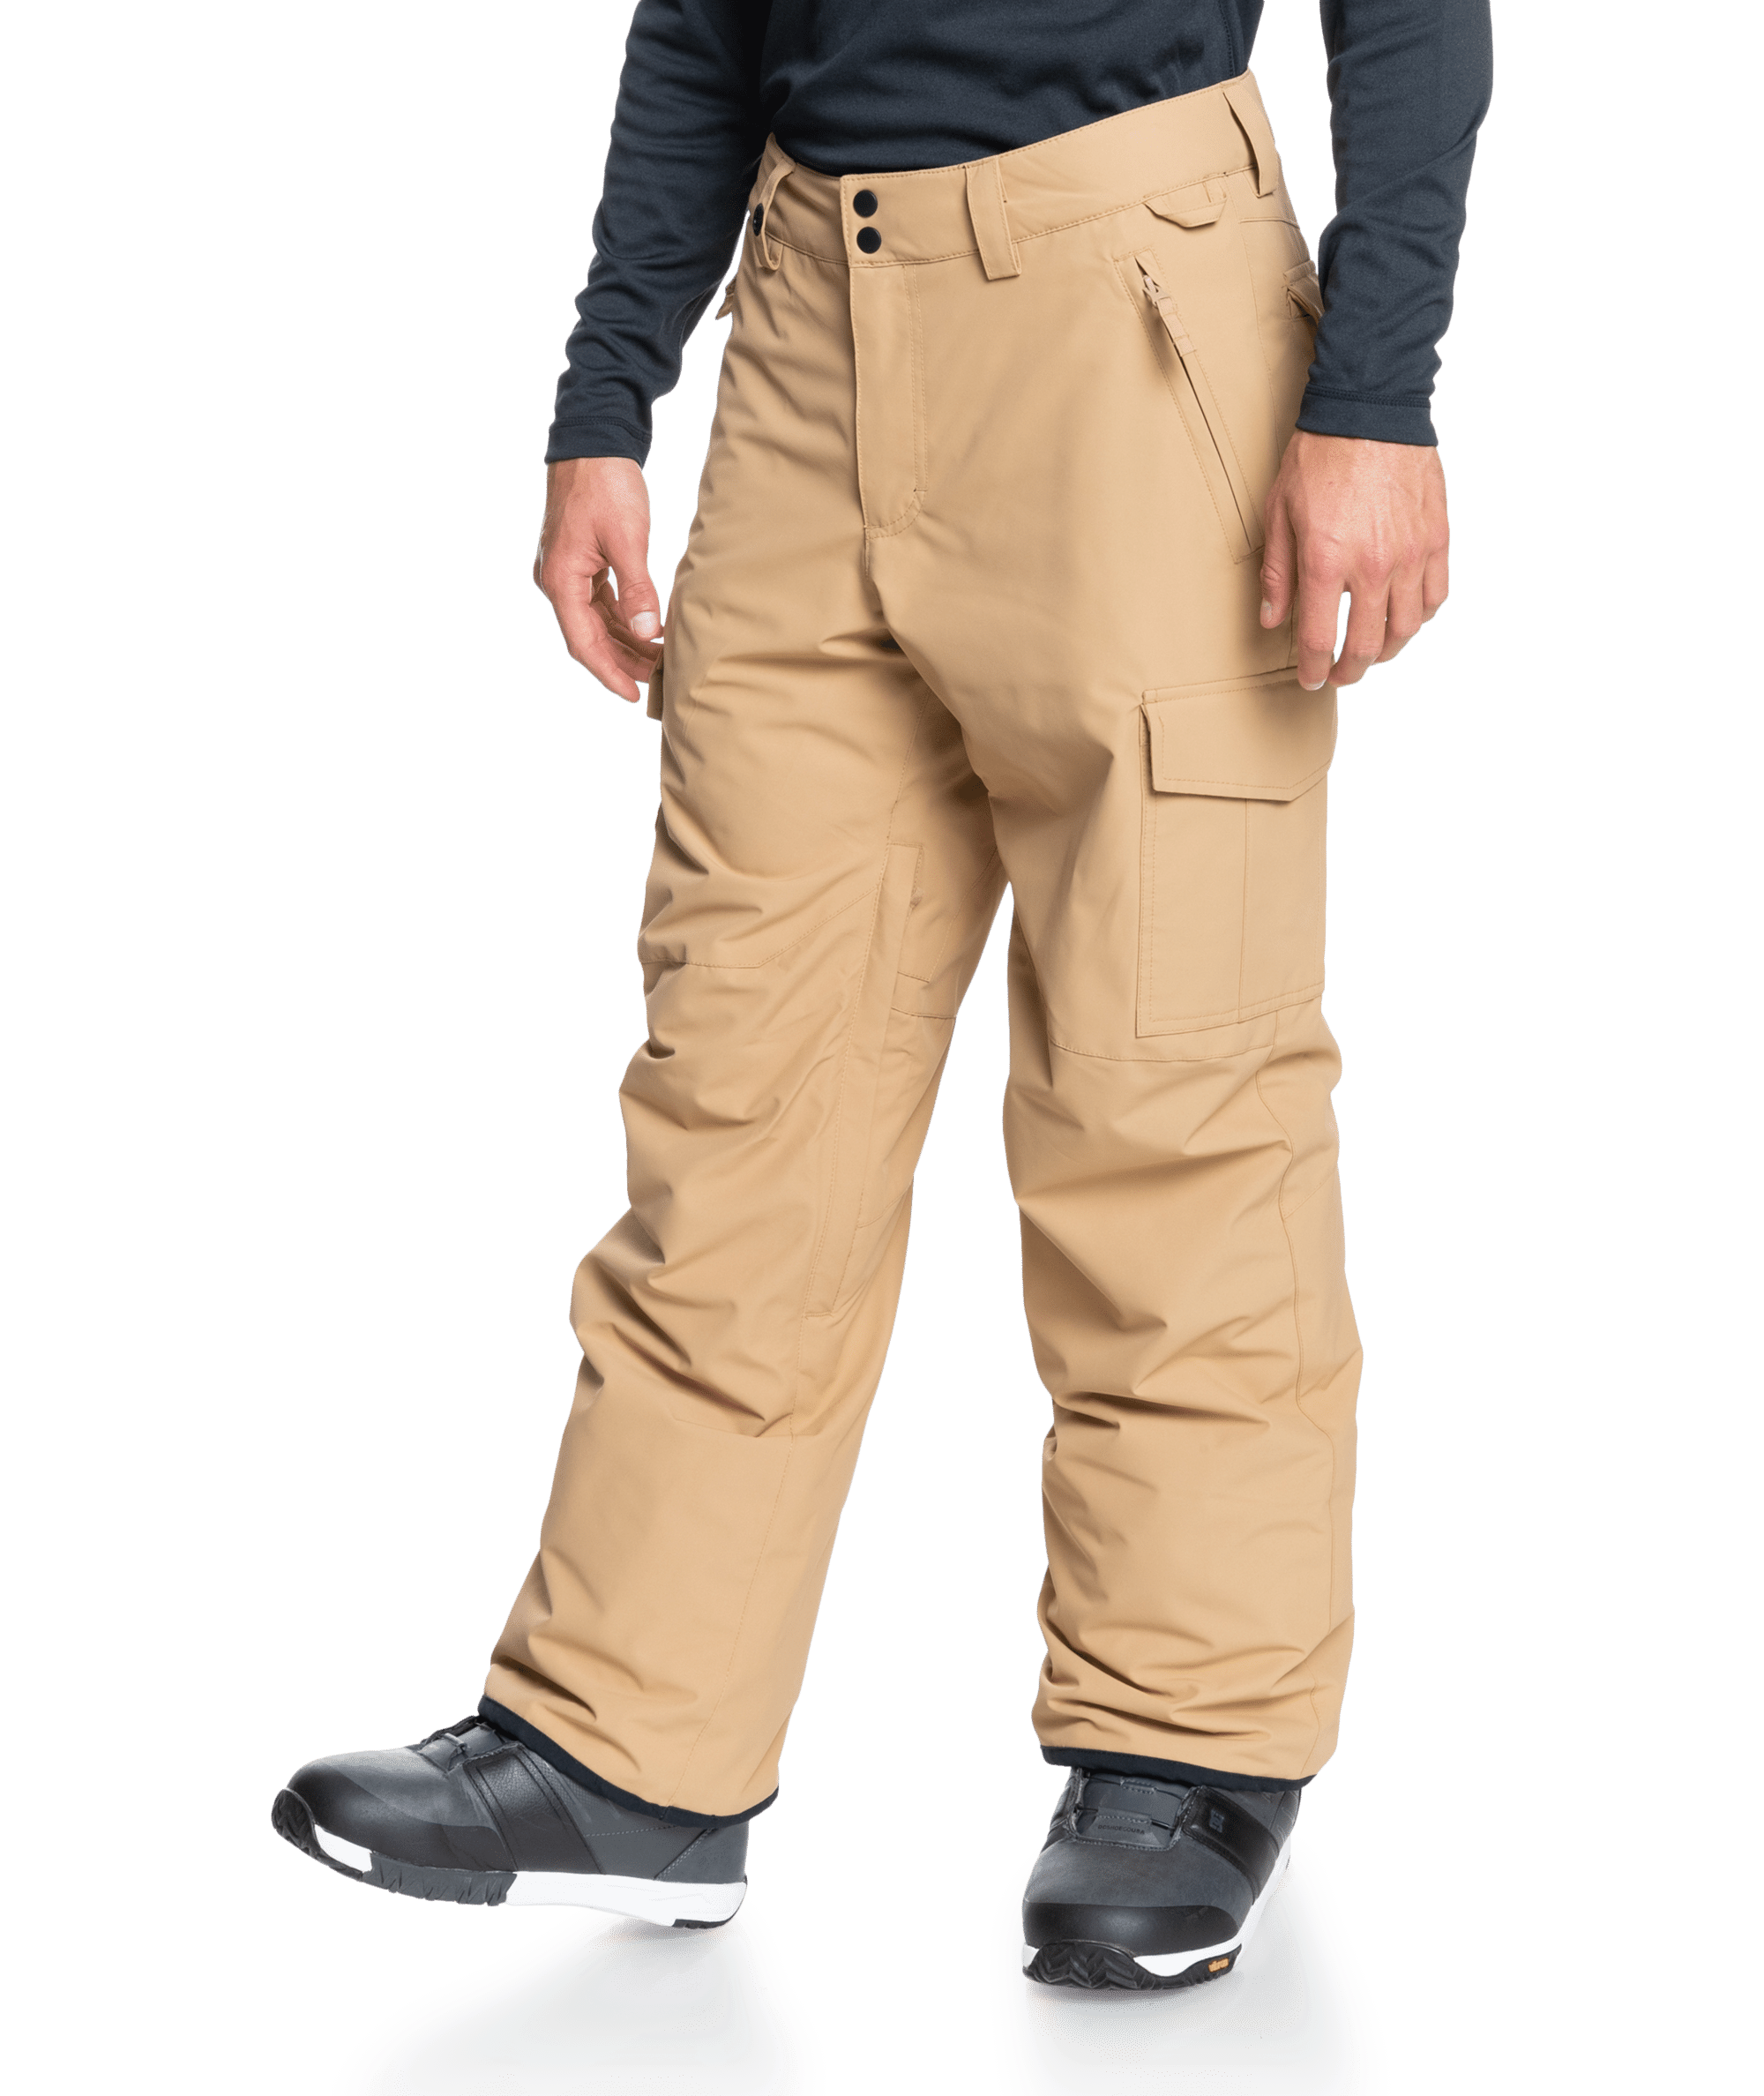 Quiksilver Men's Porter Insulated Pants